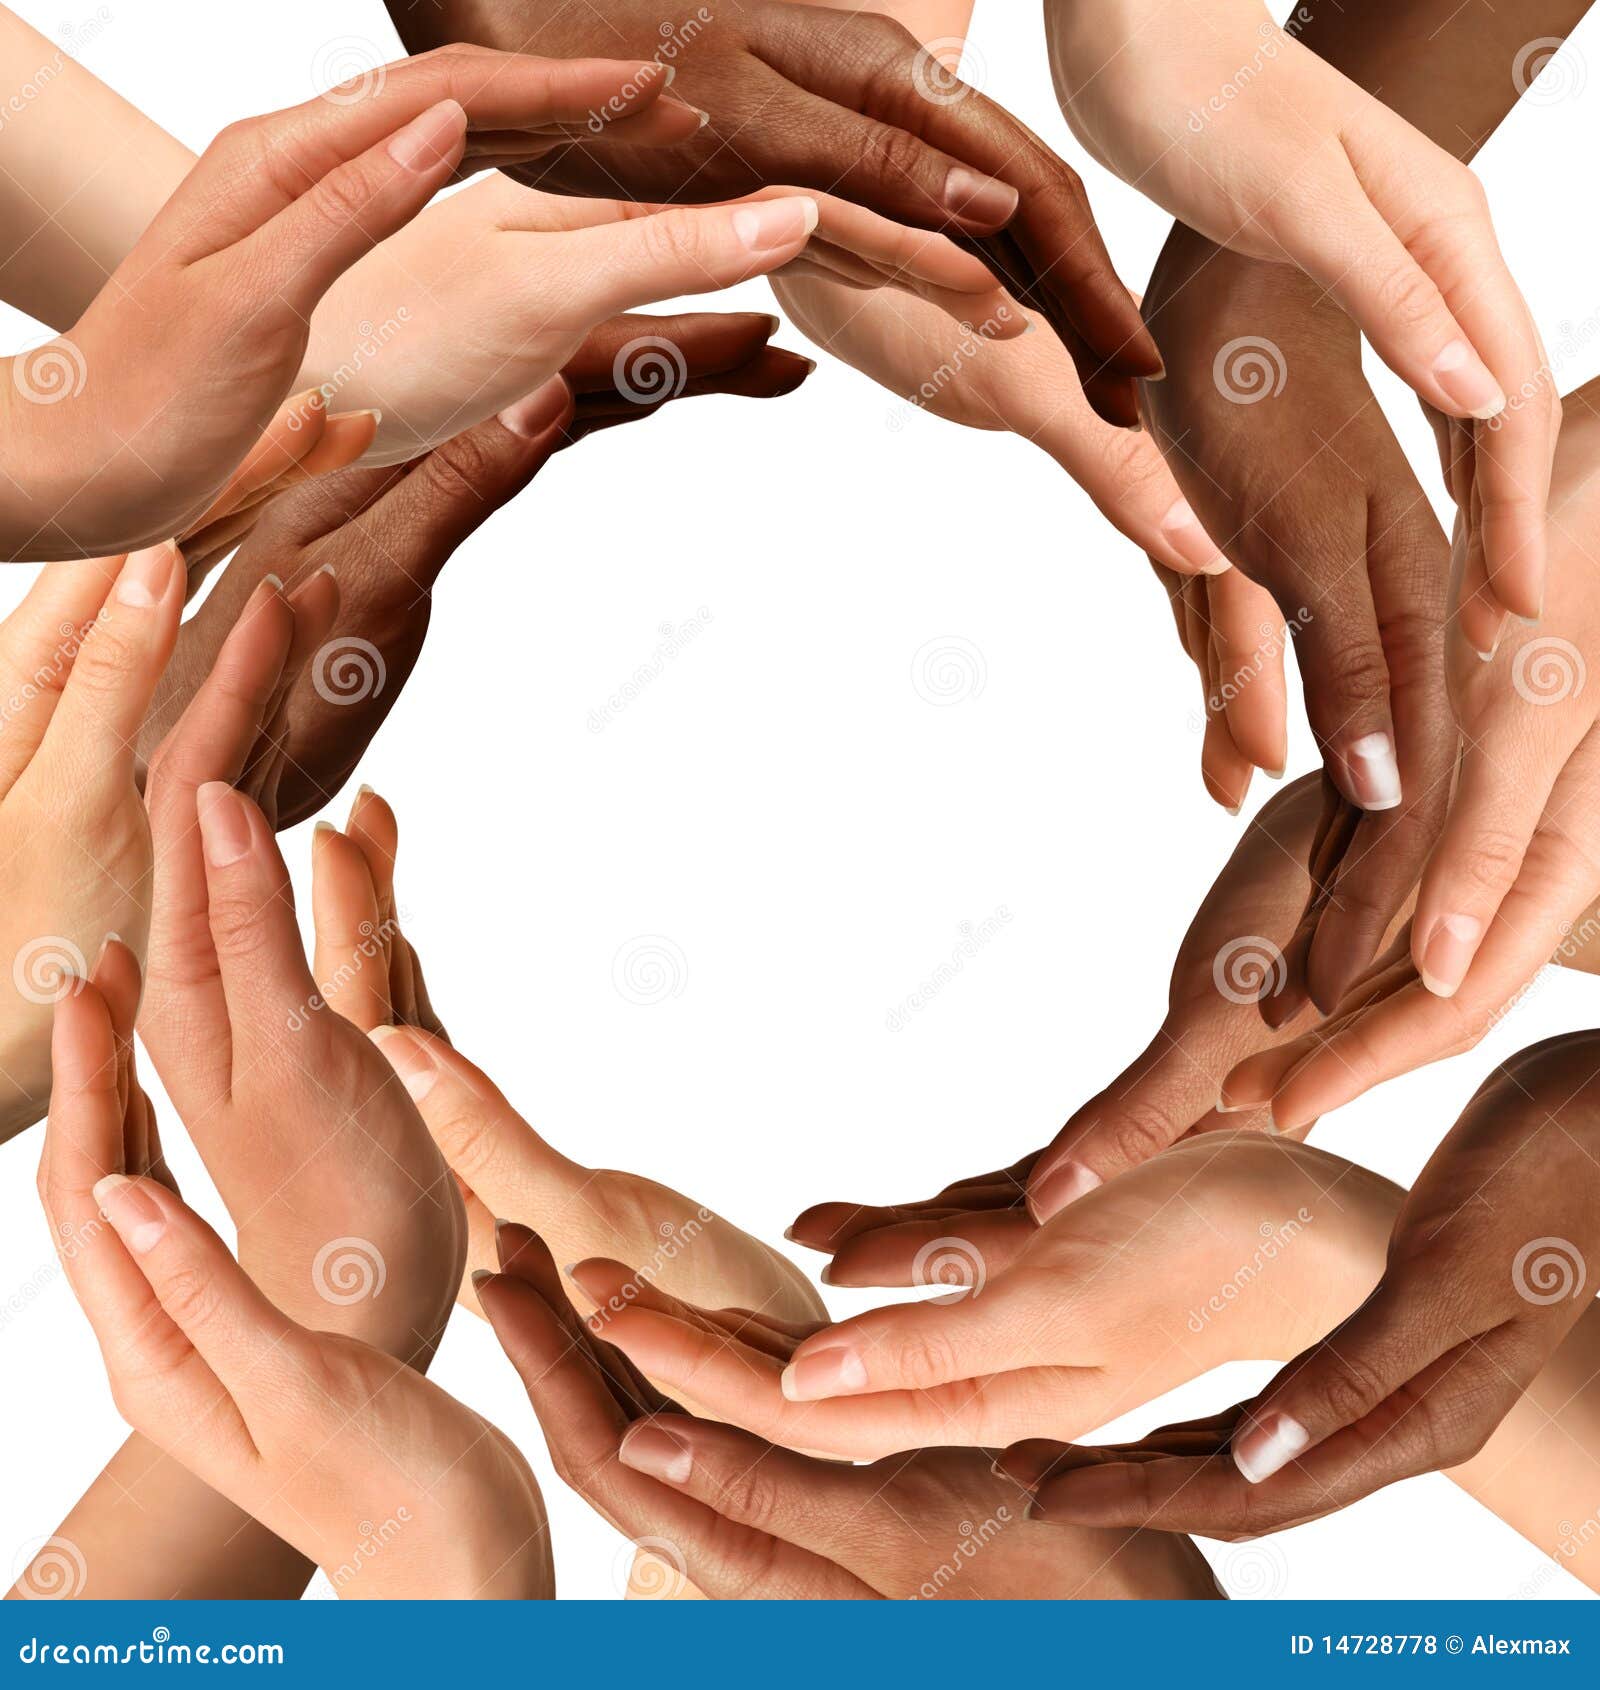 multiracial hands making a circle